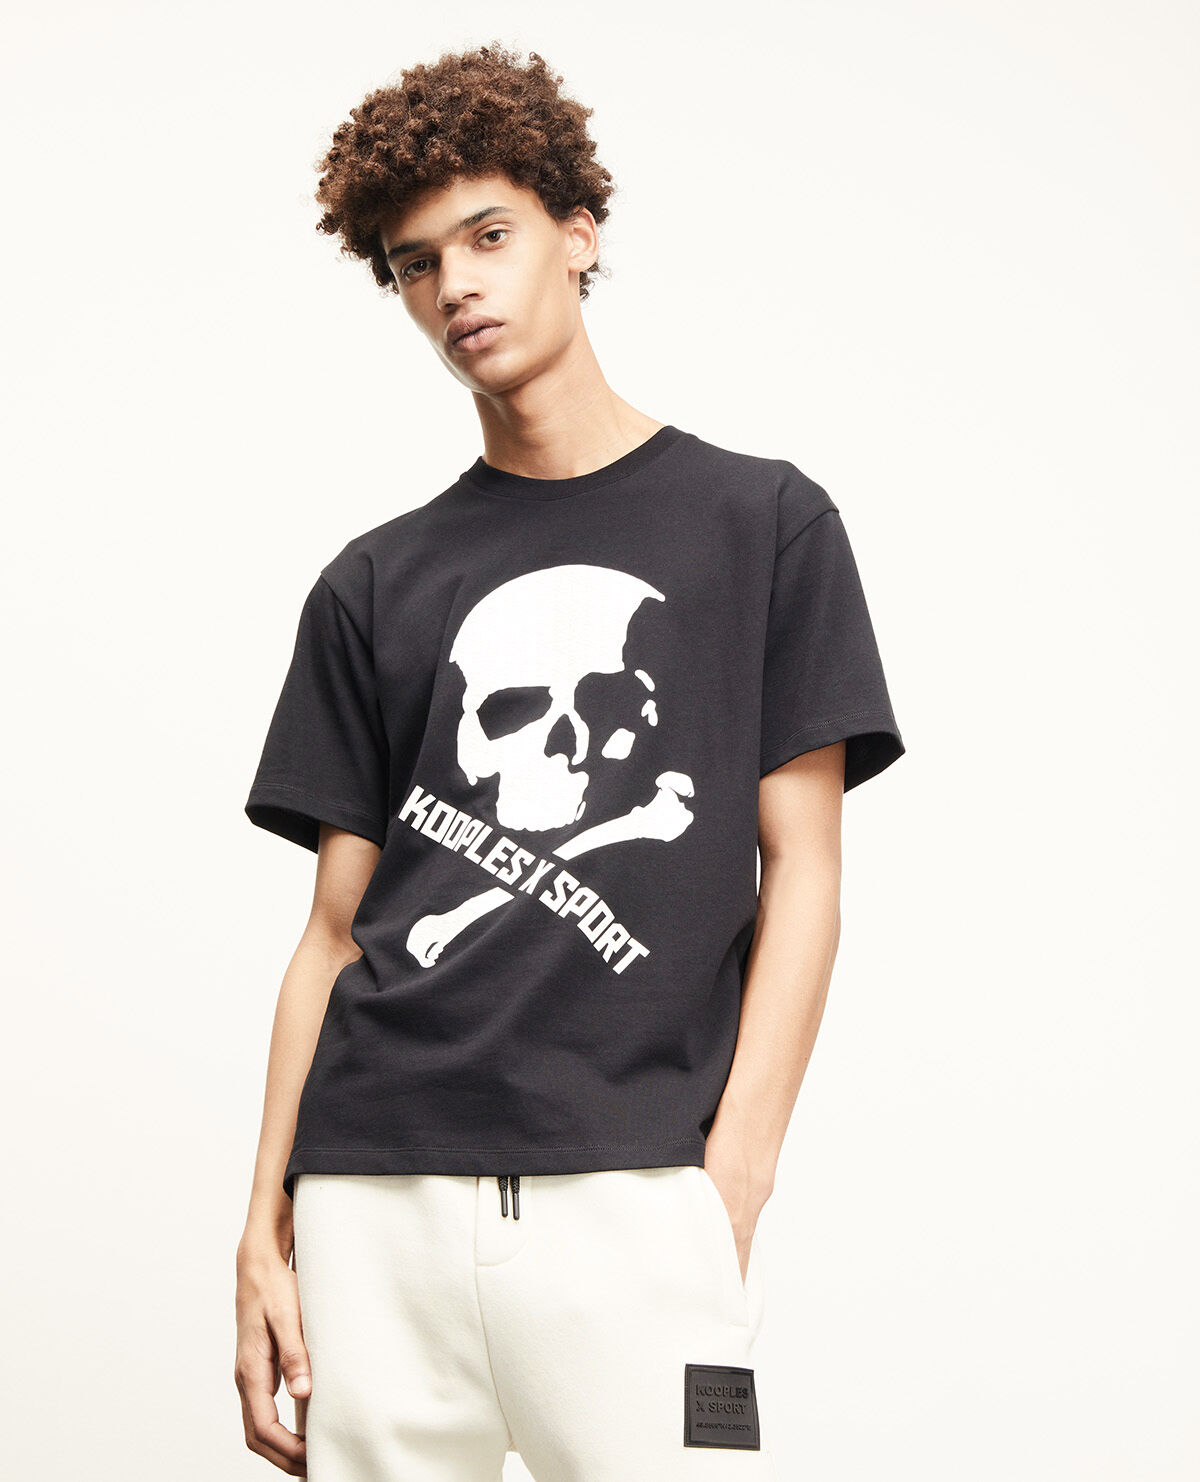 T-shirt fashion tête de mort T-shirt 1592 noir